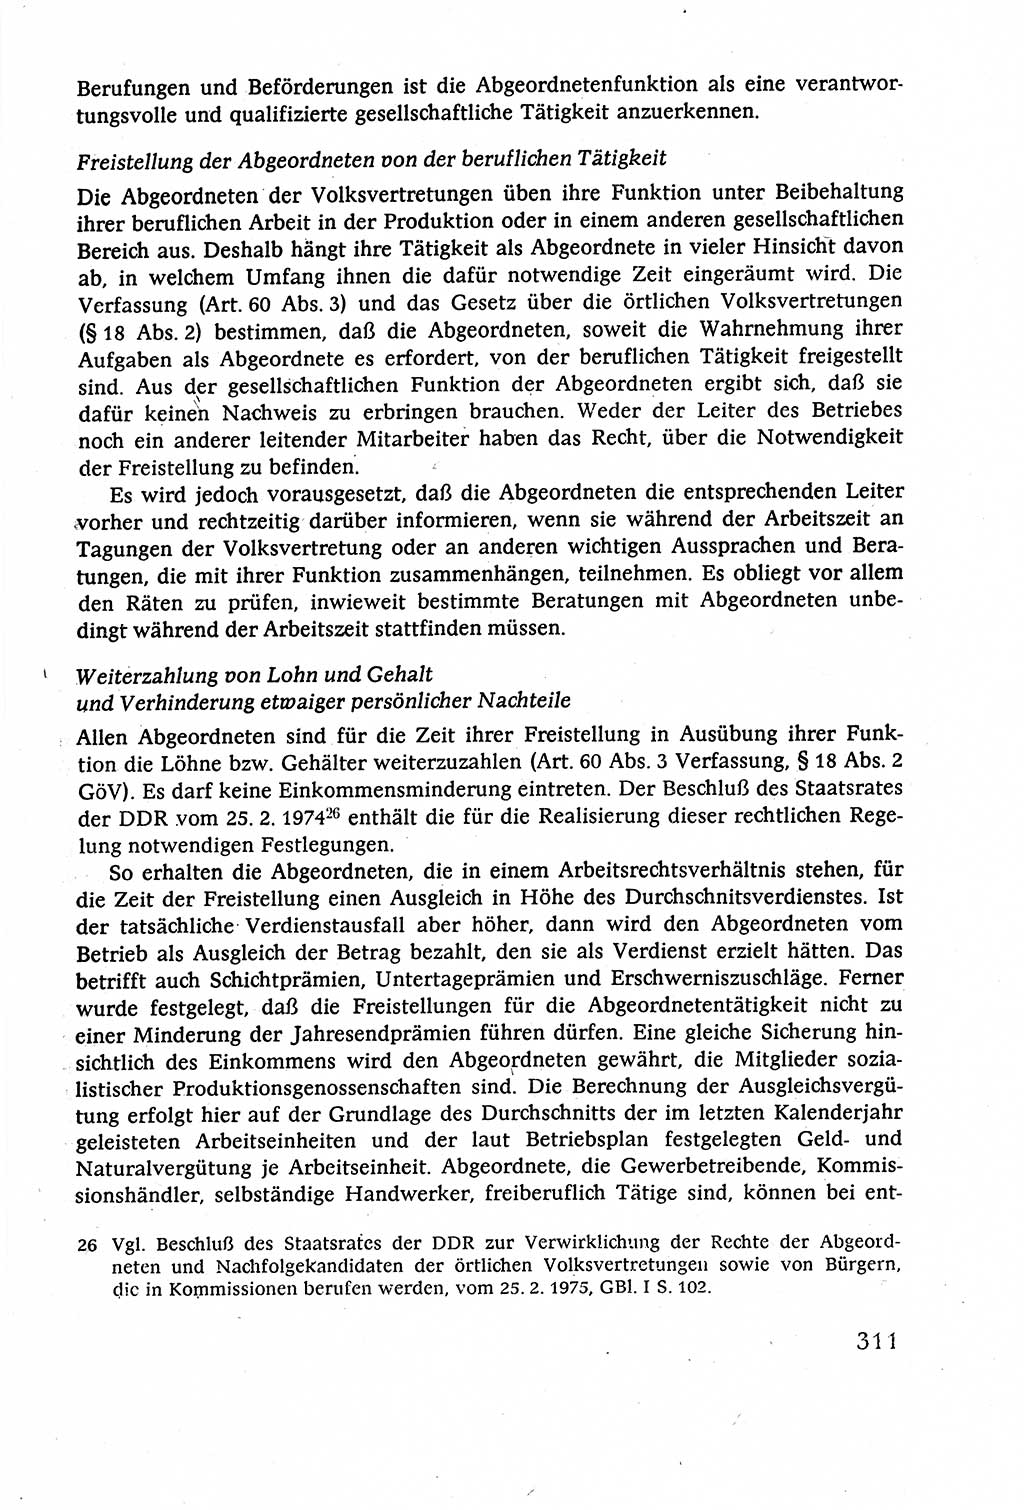 Staatsrecht der DDR (Deutsche Demokratische Republik), Lehrbuch 1977, Seite 311 (St.-R. DDR Lb. 1977, S. 311)